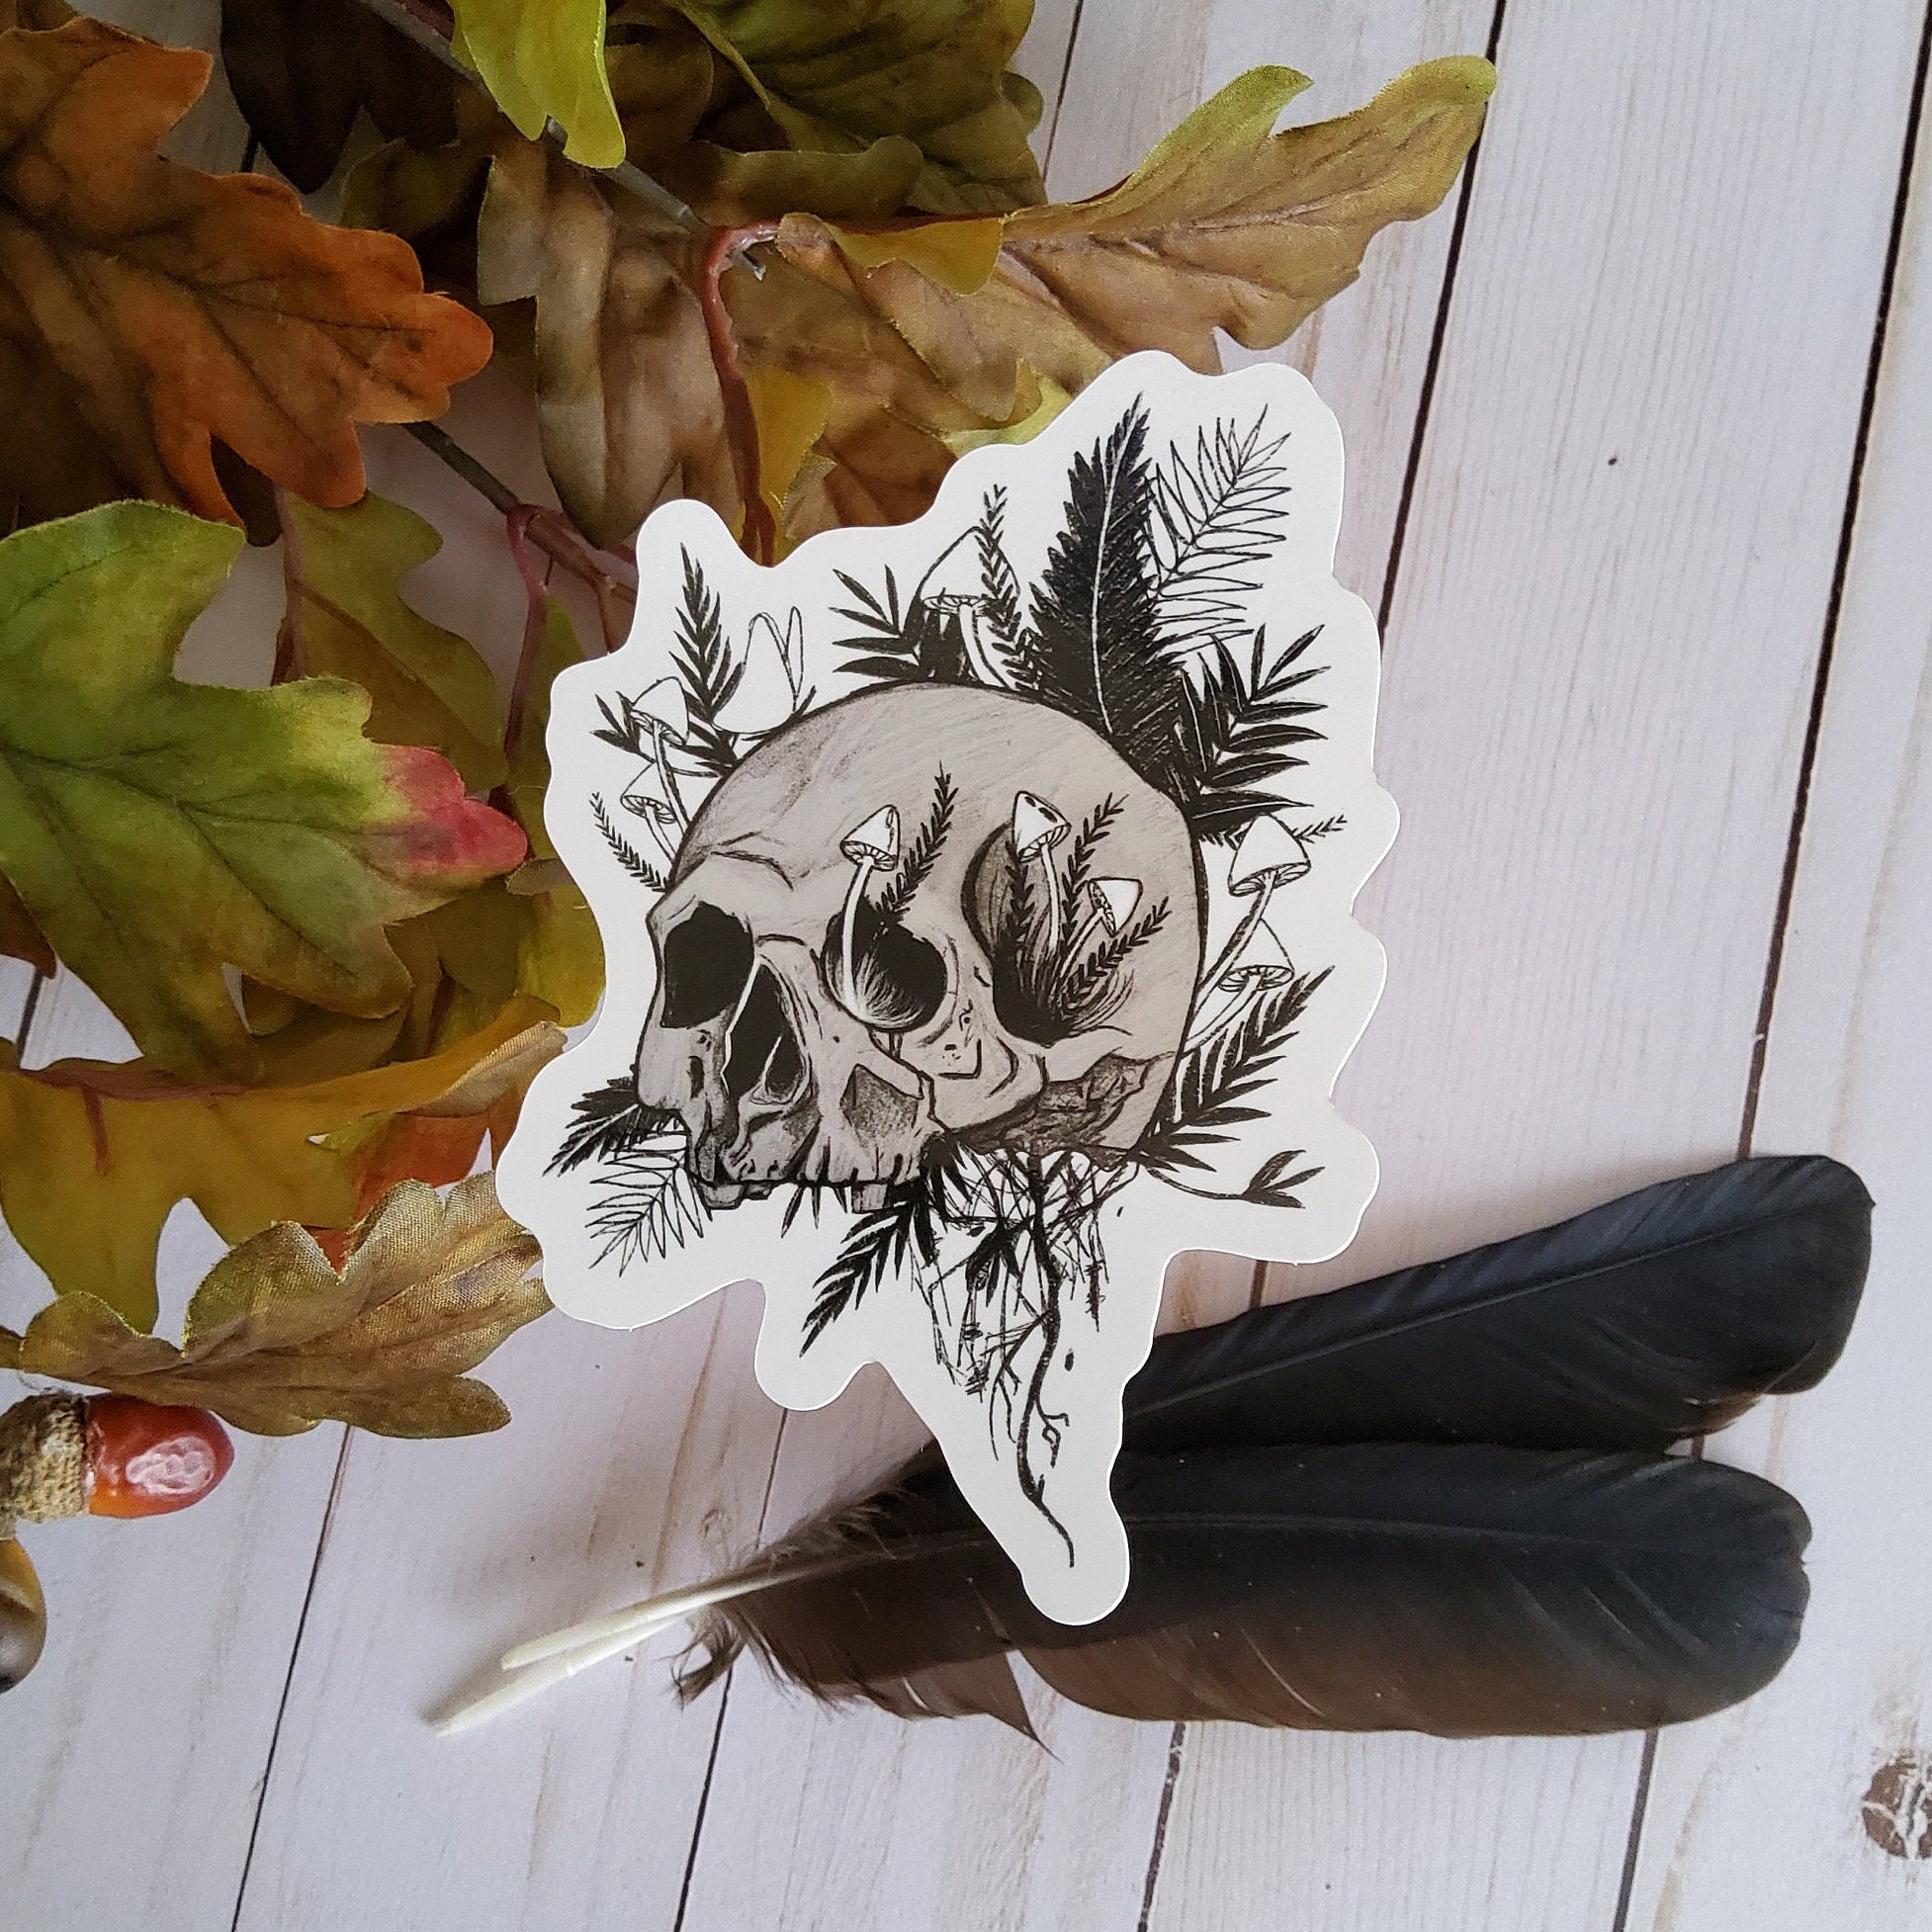 GLOSSY STICKER: Rebirth Skull and Mushroom Black and Grey Sticker , Skull and Ferns Sticker , Dark Aesthetic Skull Sticker , Skull Sticker